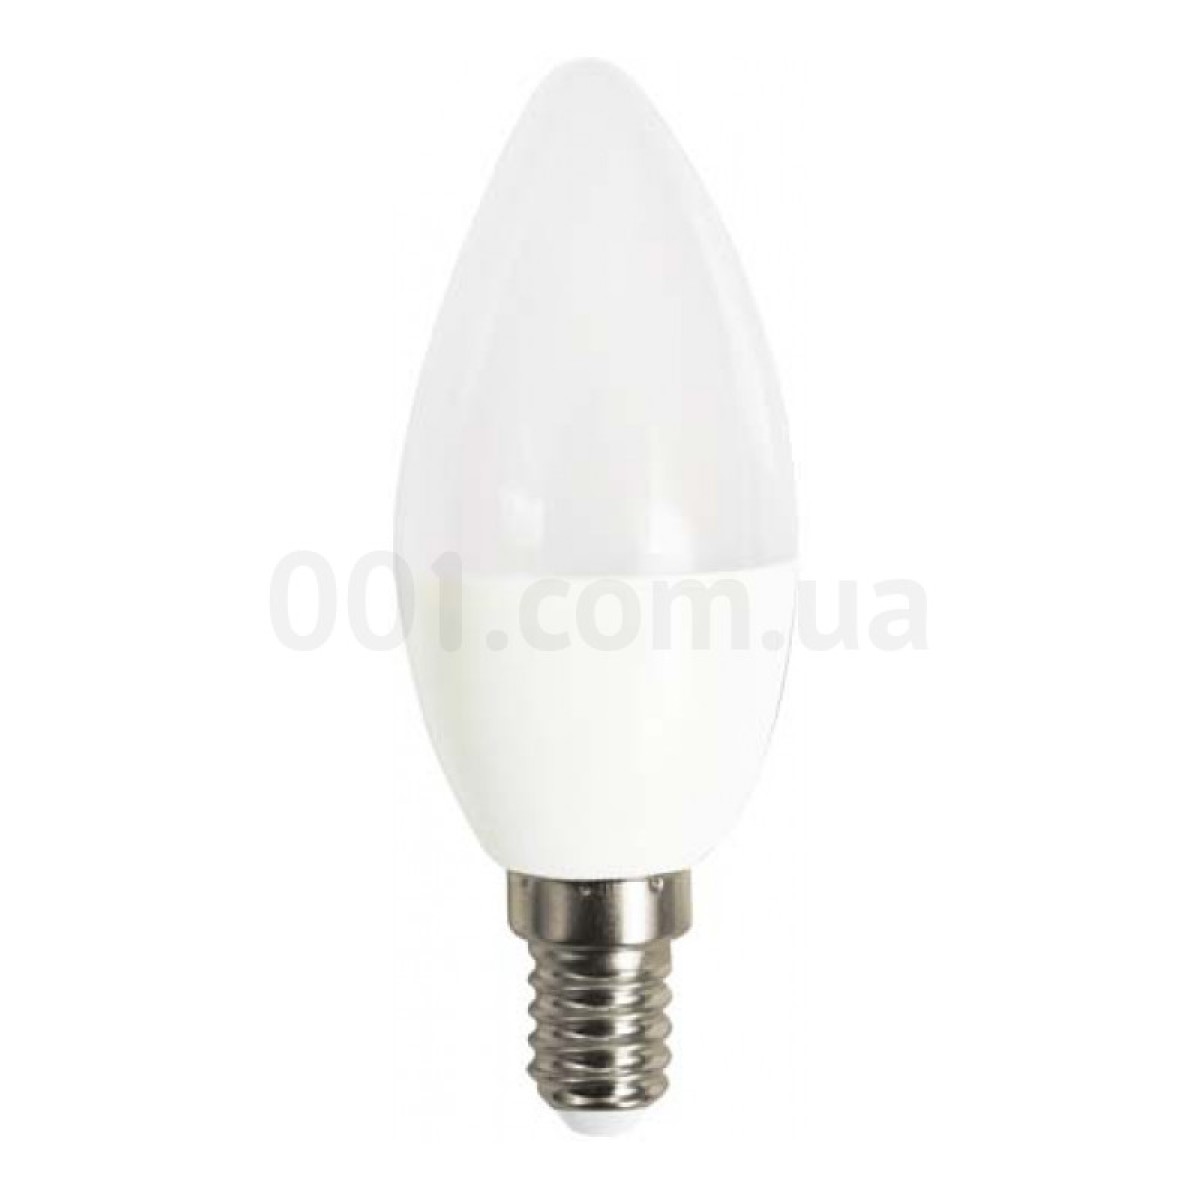 Світлодіодна лампа LB-737 C37 (свічка) 6Вт 4000K E14, Feron 256_256.jpg